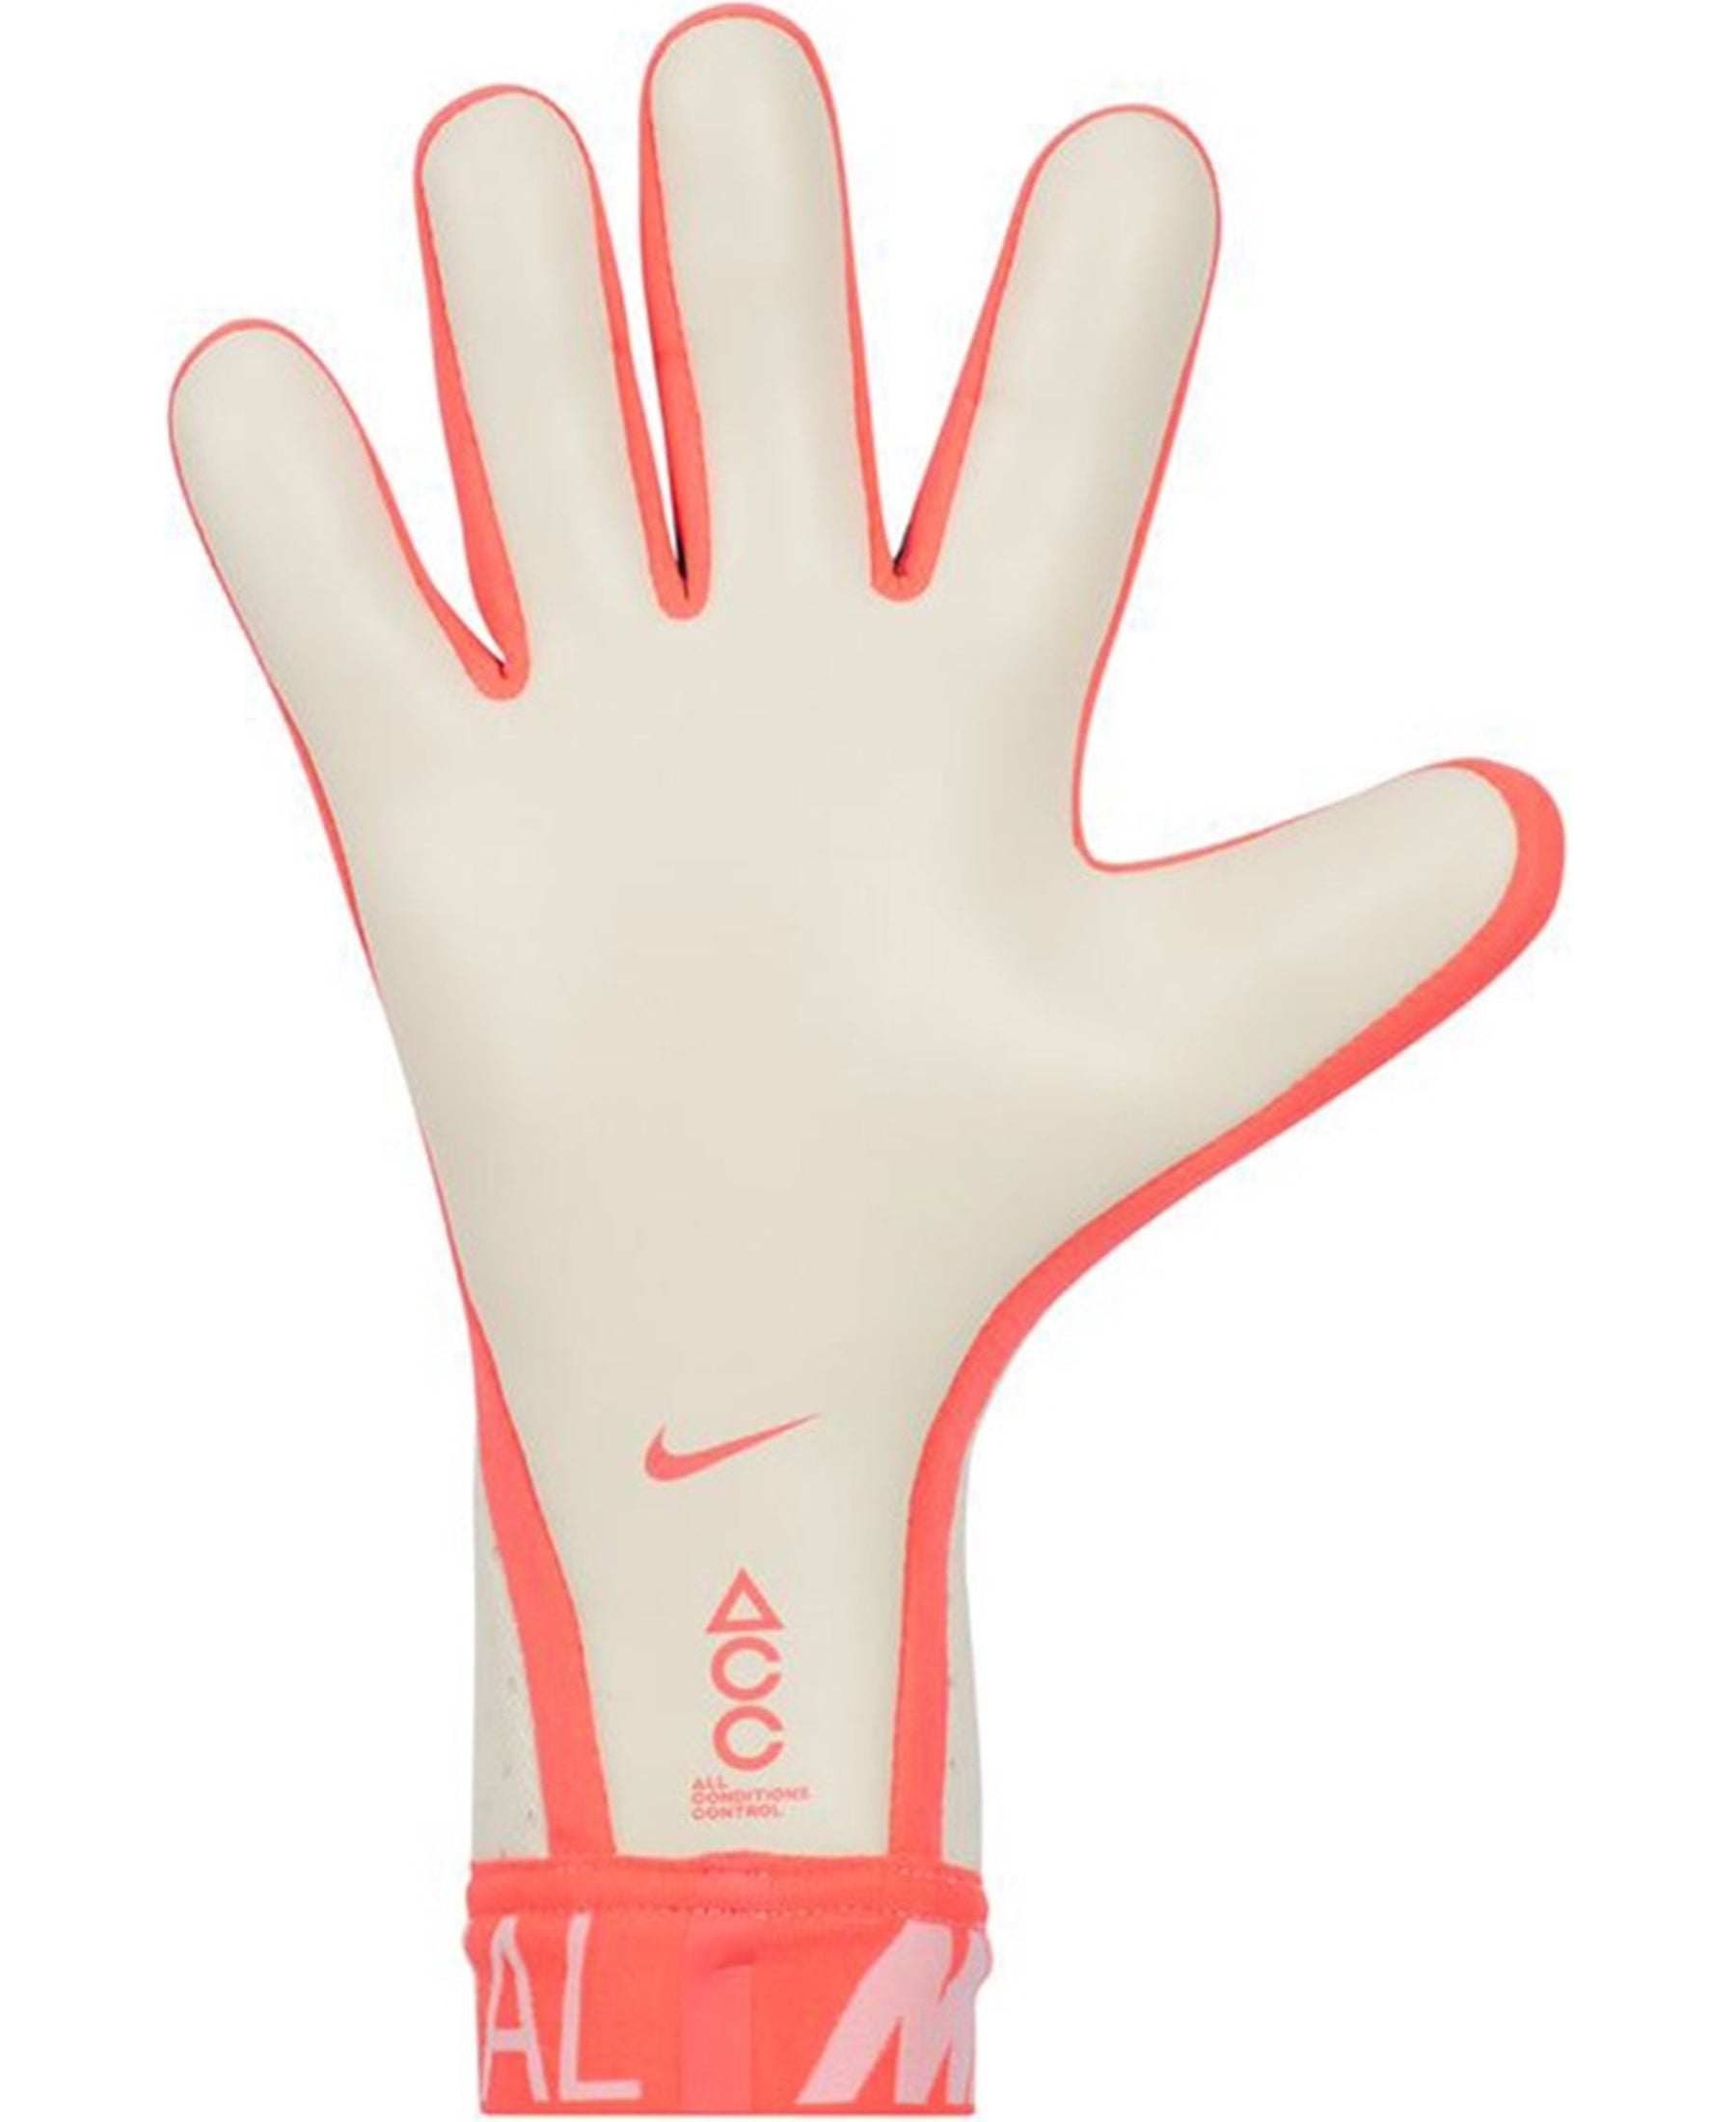 Die Nike GK Mercurial Touch Elite Torwarthandschuhe (DC1980-101) bieten Torhütern erstklassige Leistung und Style. Diese hochwertigen Handschuhe sind die perfekte Wahl für ambitionierte Torwarte. Bei SHOP4TEAMSPORT finden Sie diese Handschuhe in verschiedenen Größen. Holen Sie sich jetzt Ihre Nike GK Mercurial Touch Elite Torwarthandschuhe und sichern Sie sich den optimalen Schutz für Ihre Hände auf dem Spielfeld.